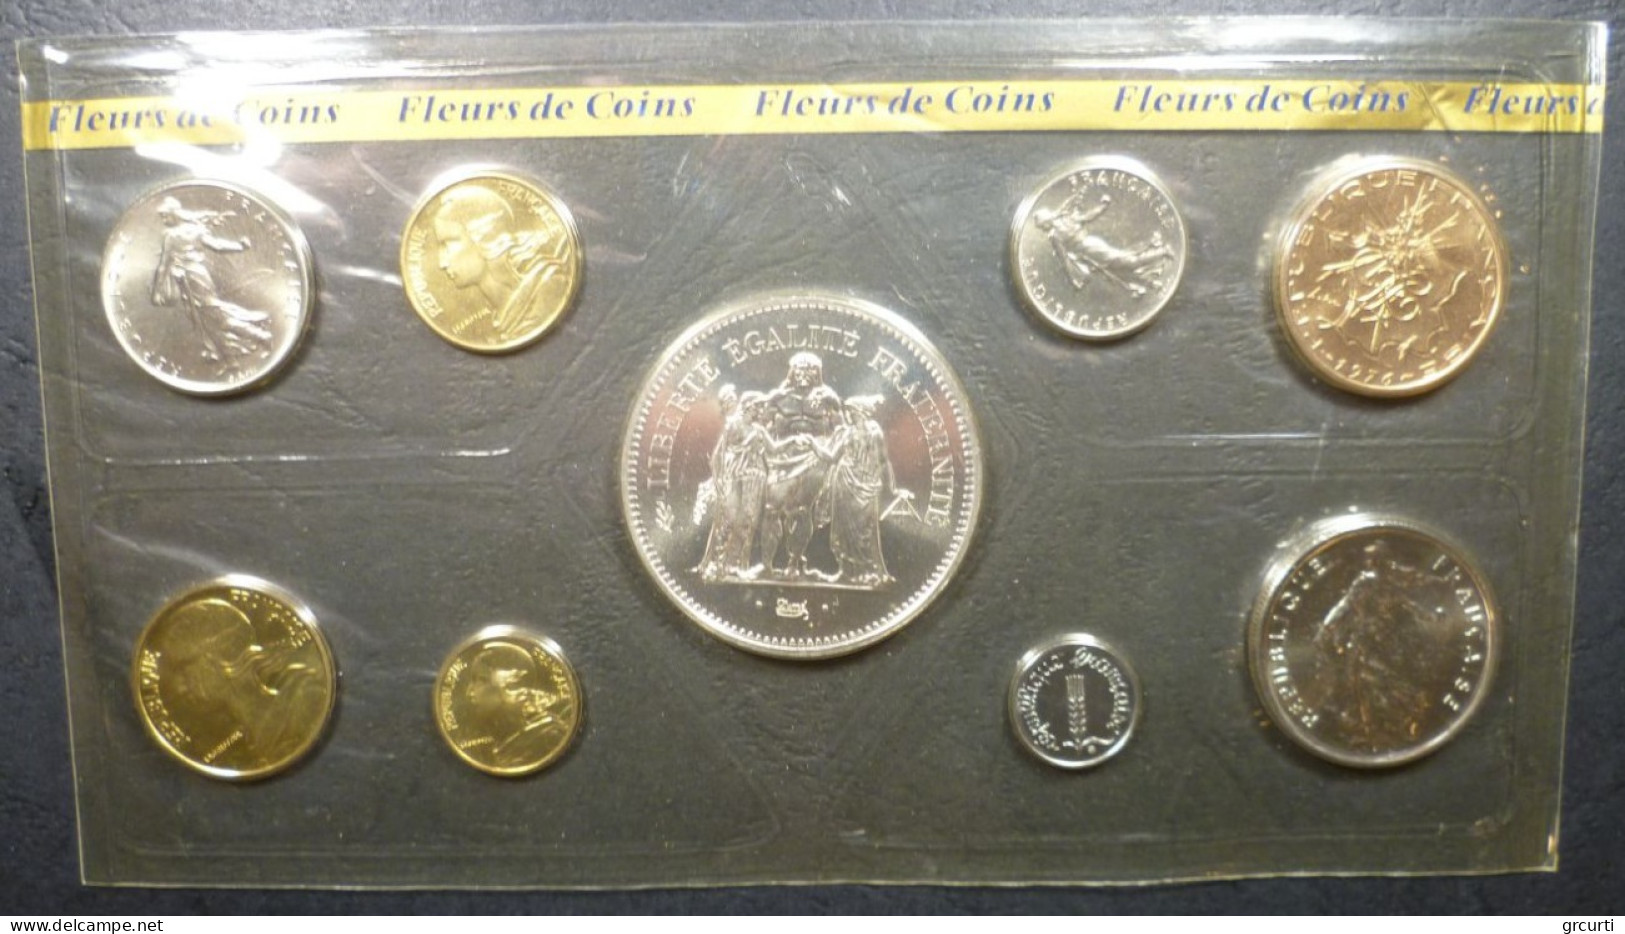 Francia - Set Fleurs De Coins 1976 - KM# SS13 - BU, BE & Coffrets